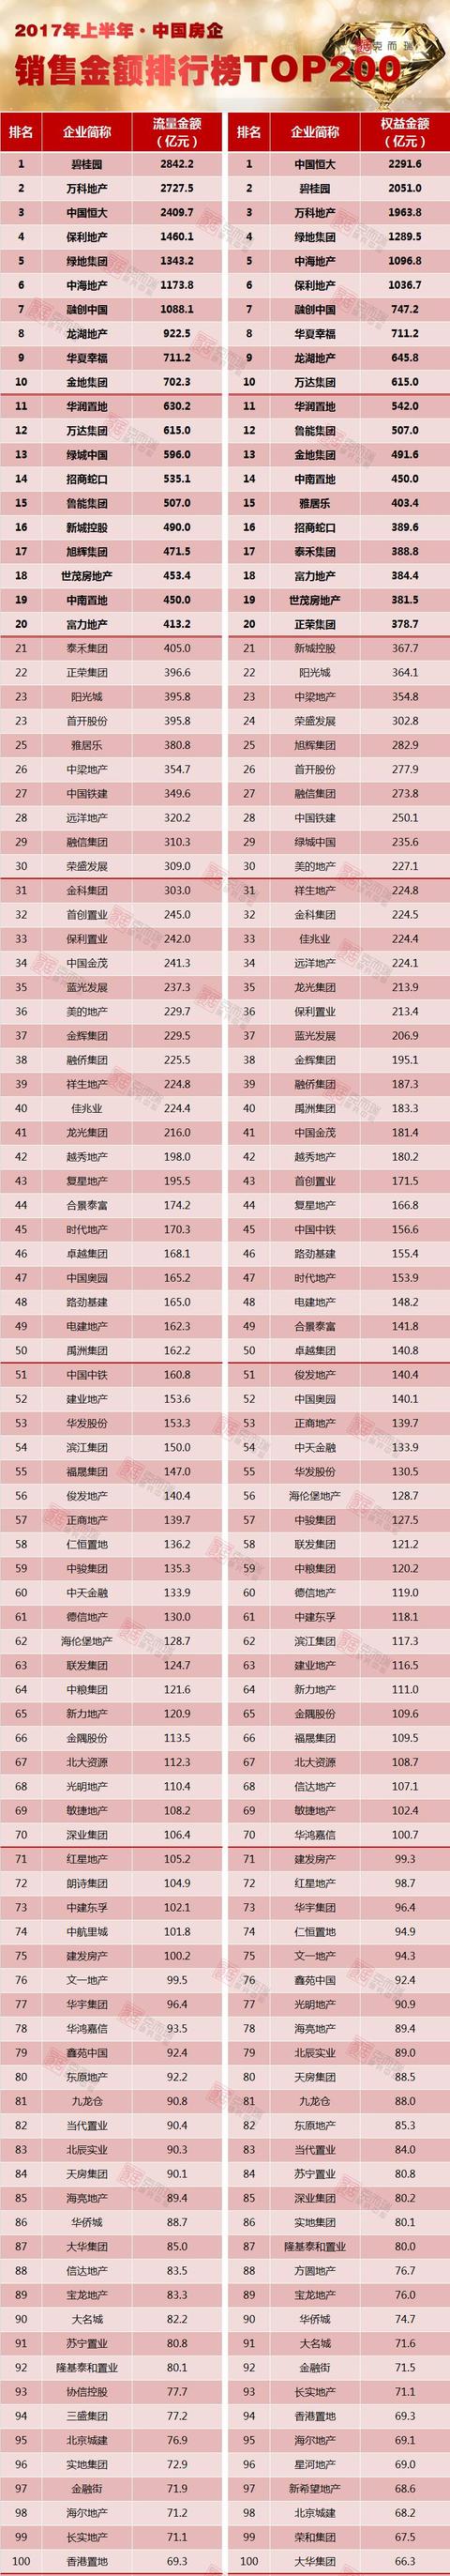 2017年上半年房地产企业销售排行榜TOP200：碧桂园业绩2842亿